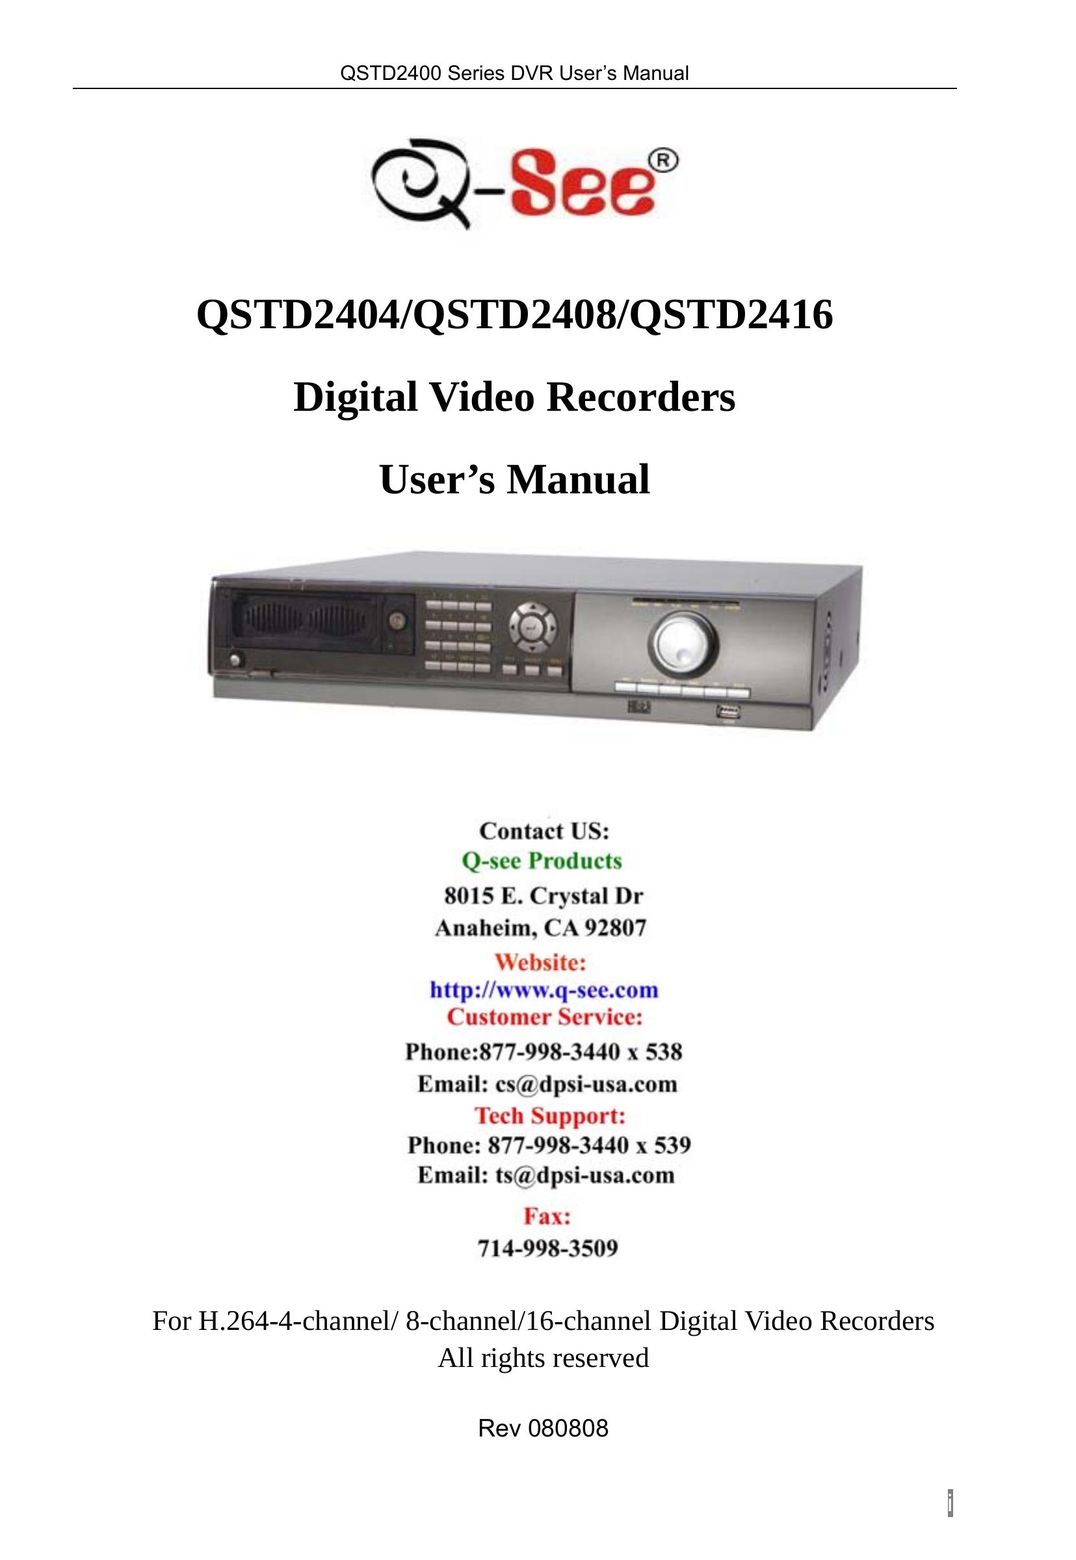 Q-See QSTD2416 Fan User Manual